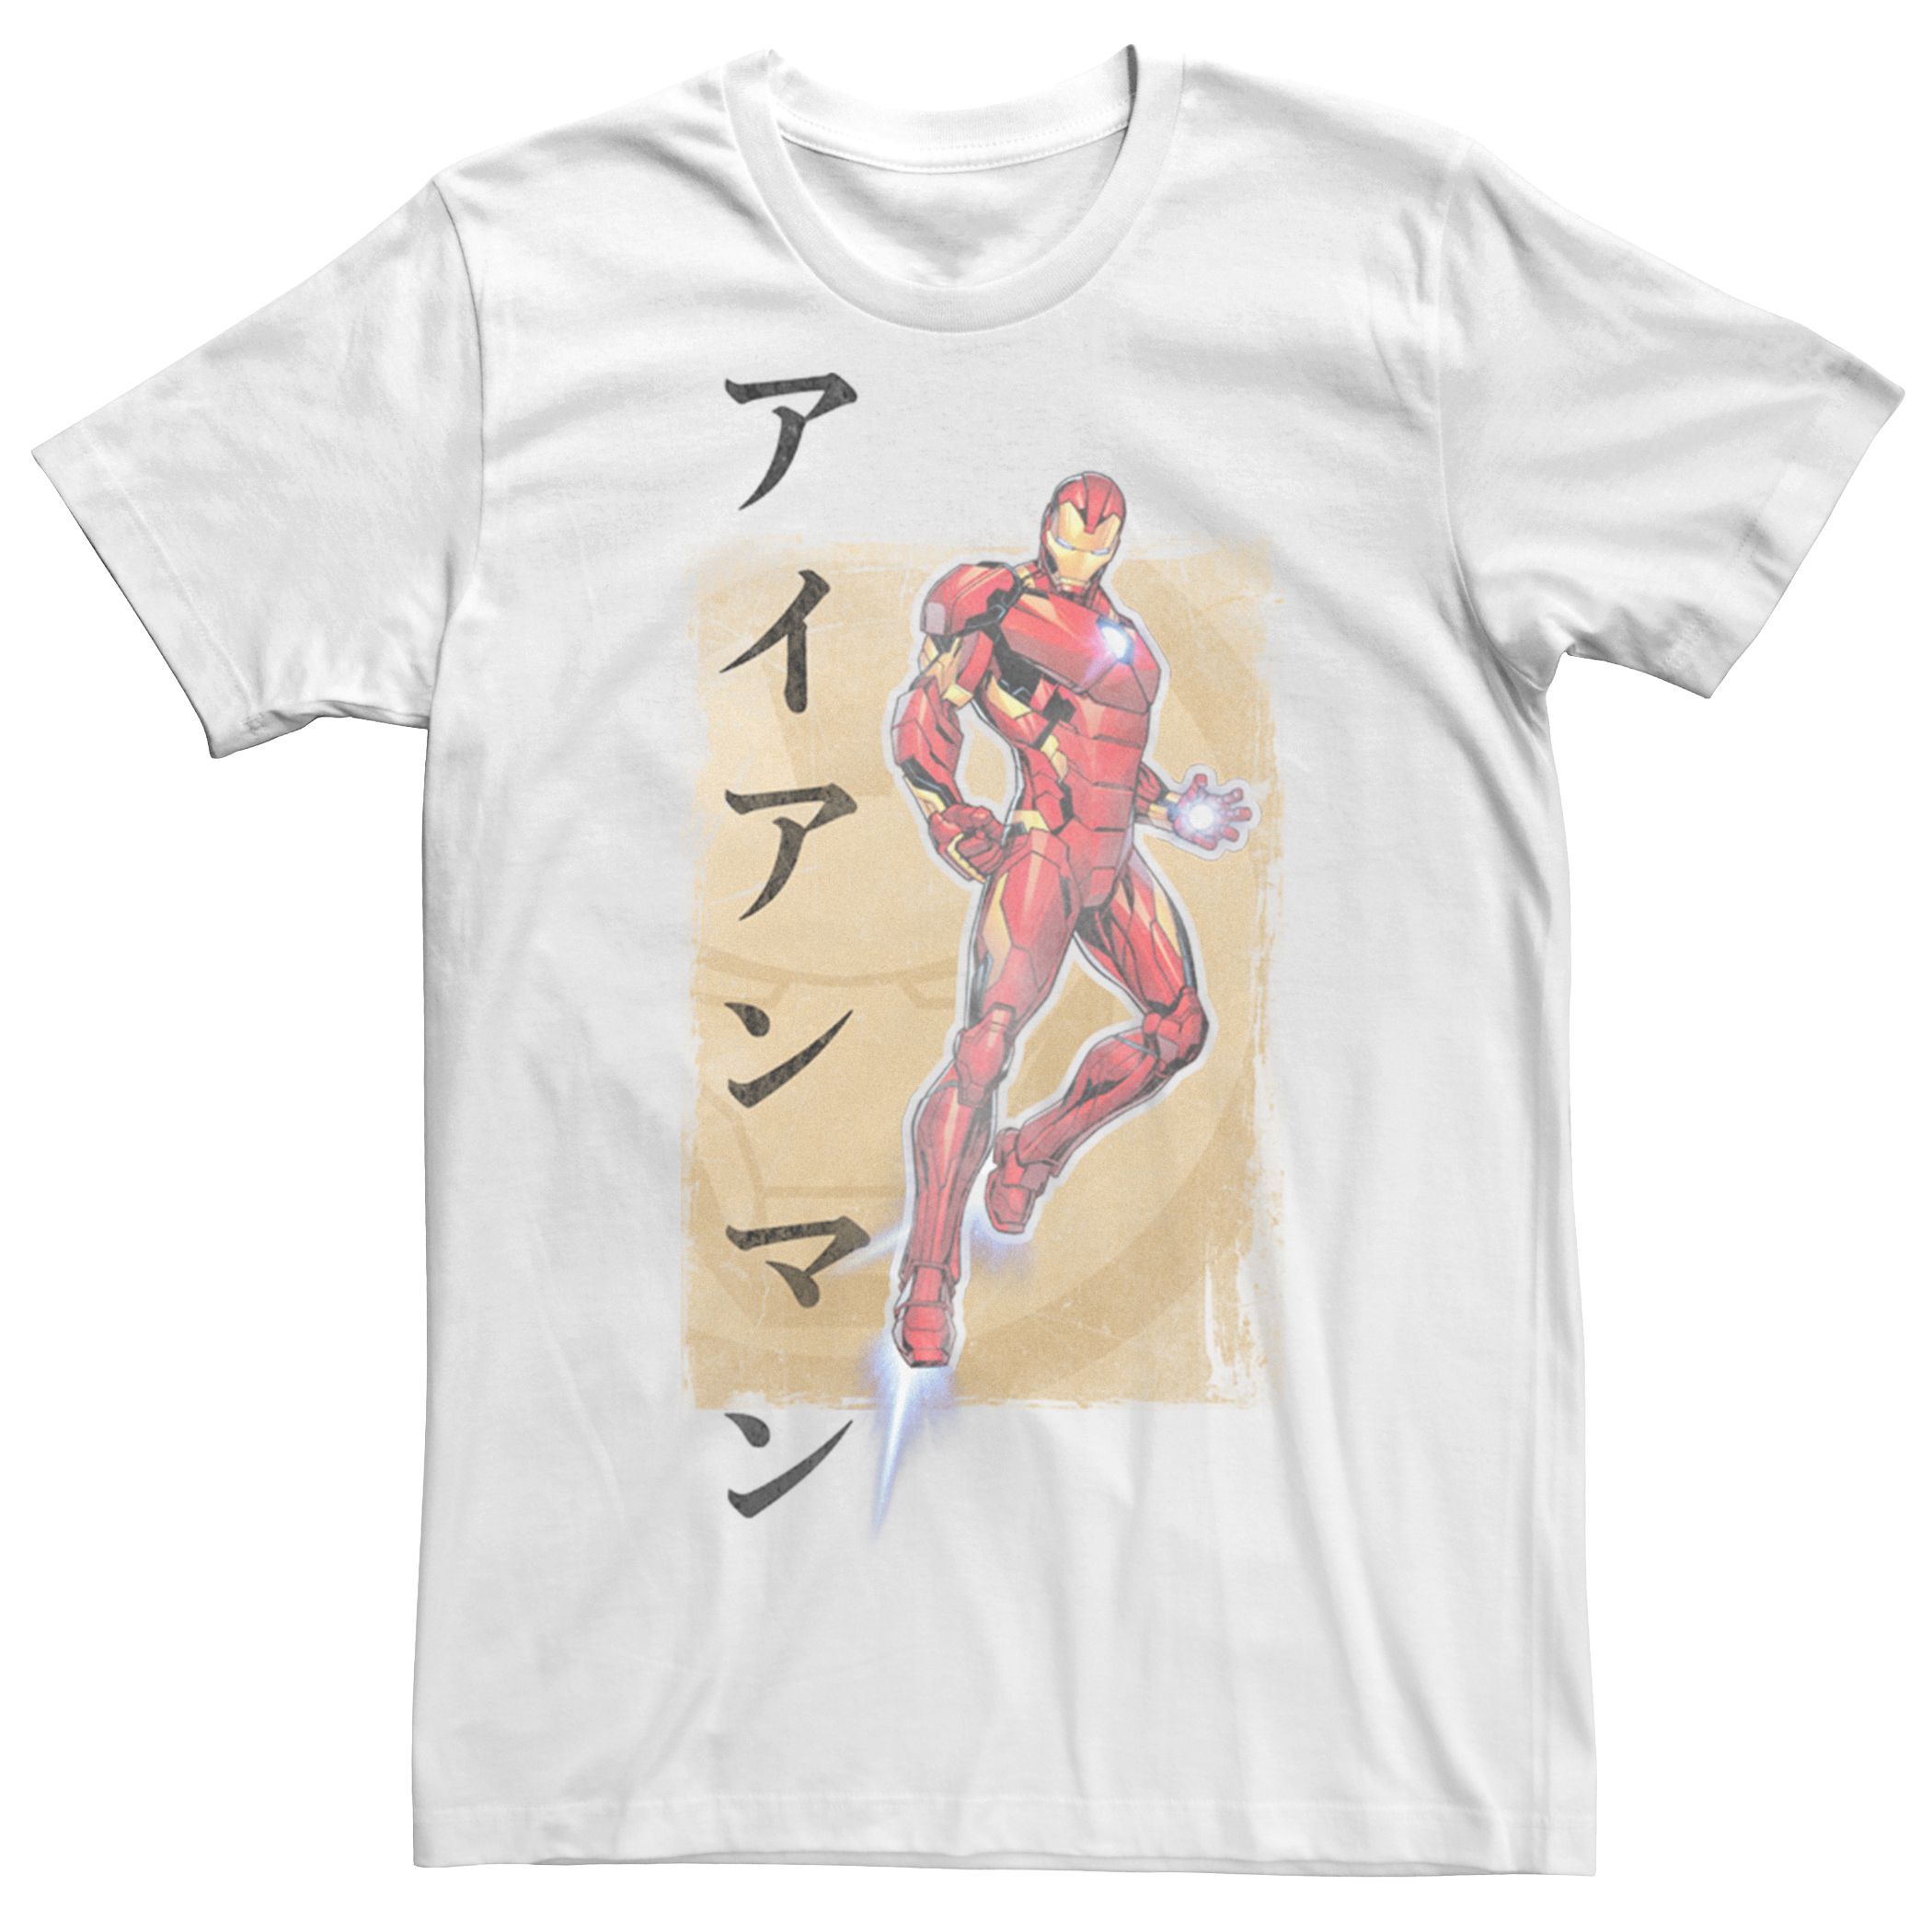 Мужская футболка с портретом кандзи «Железный человек» Licensed Character